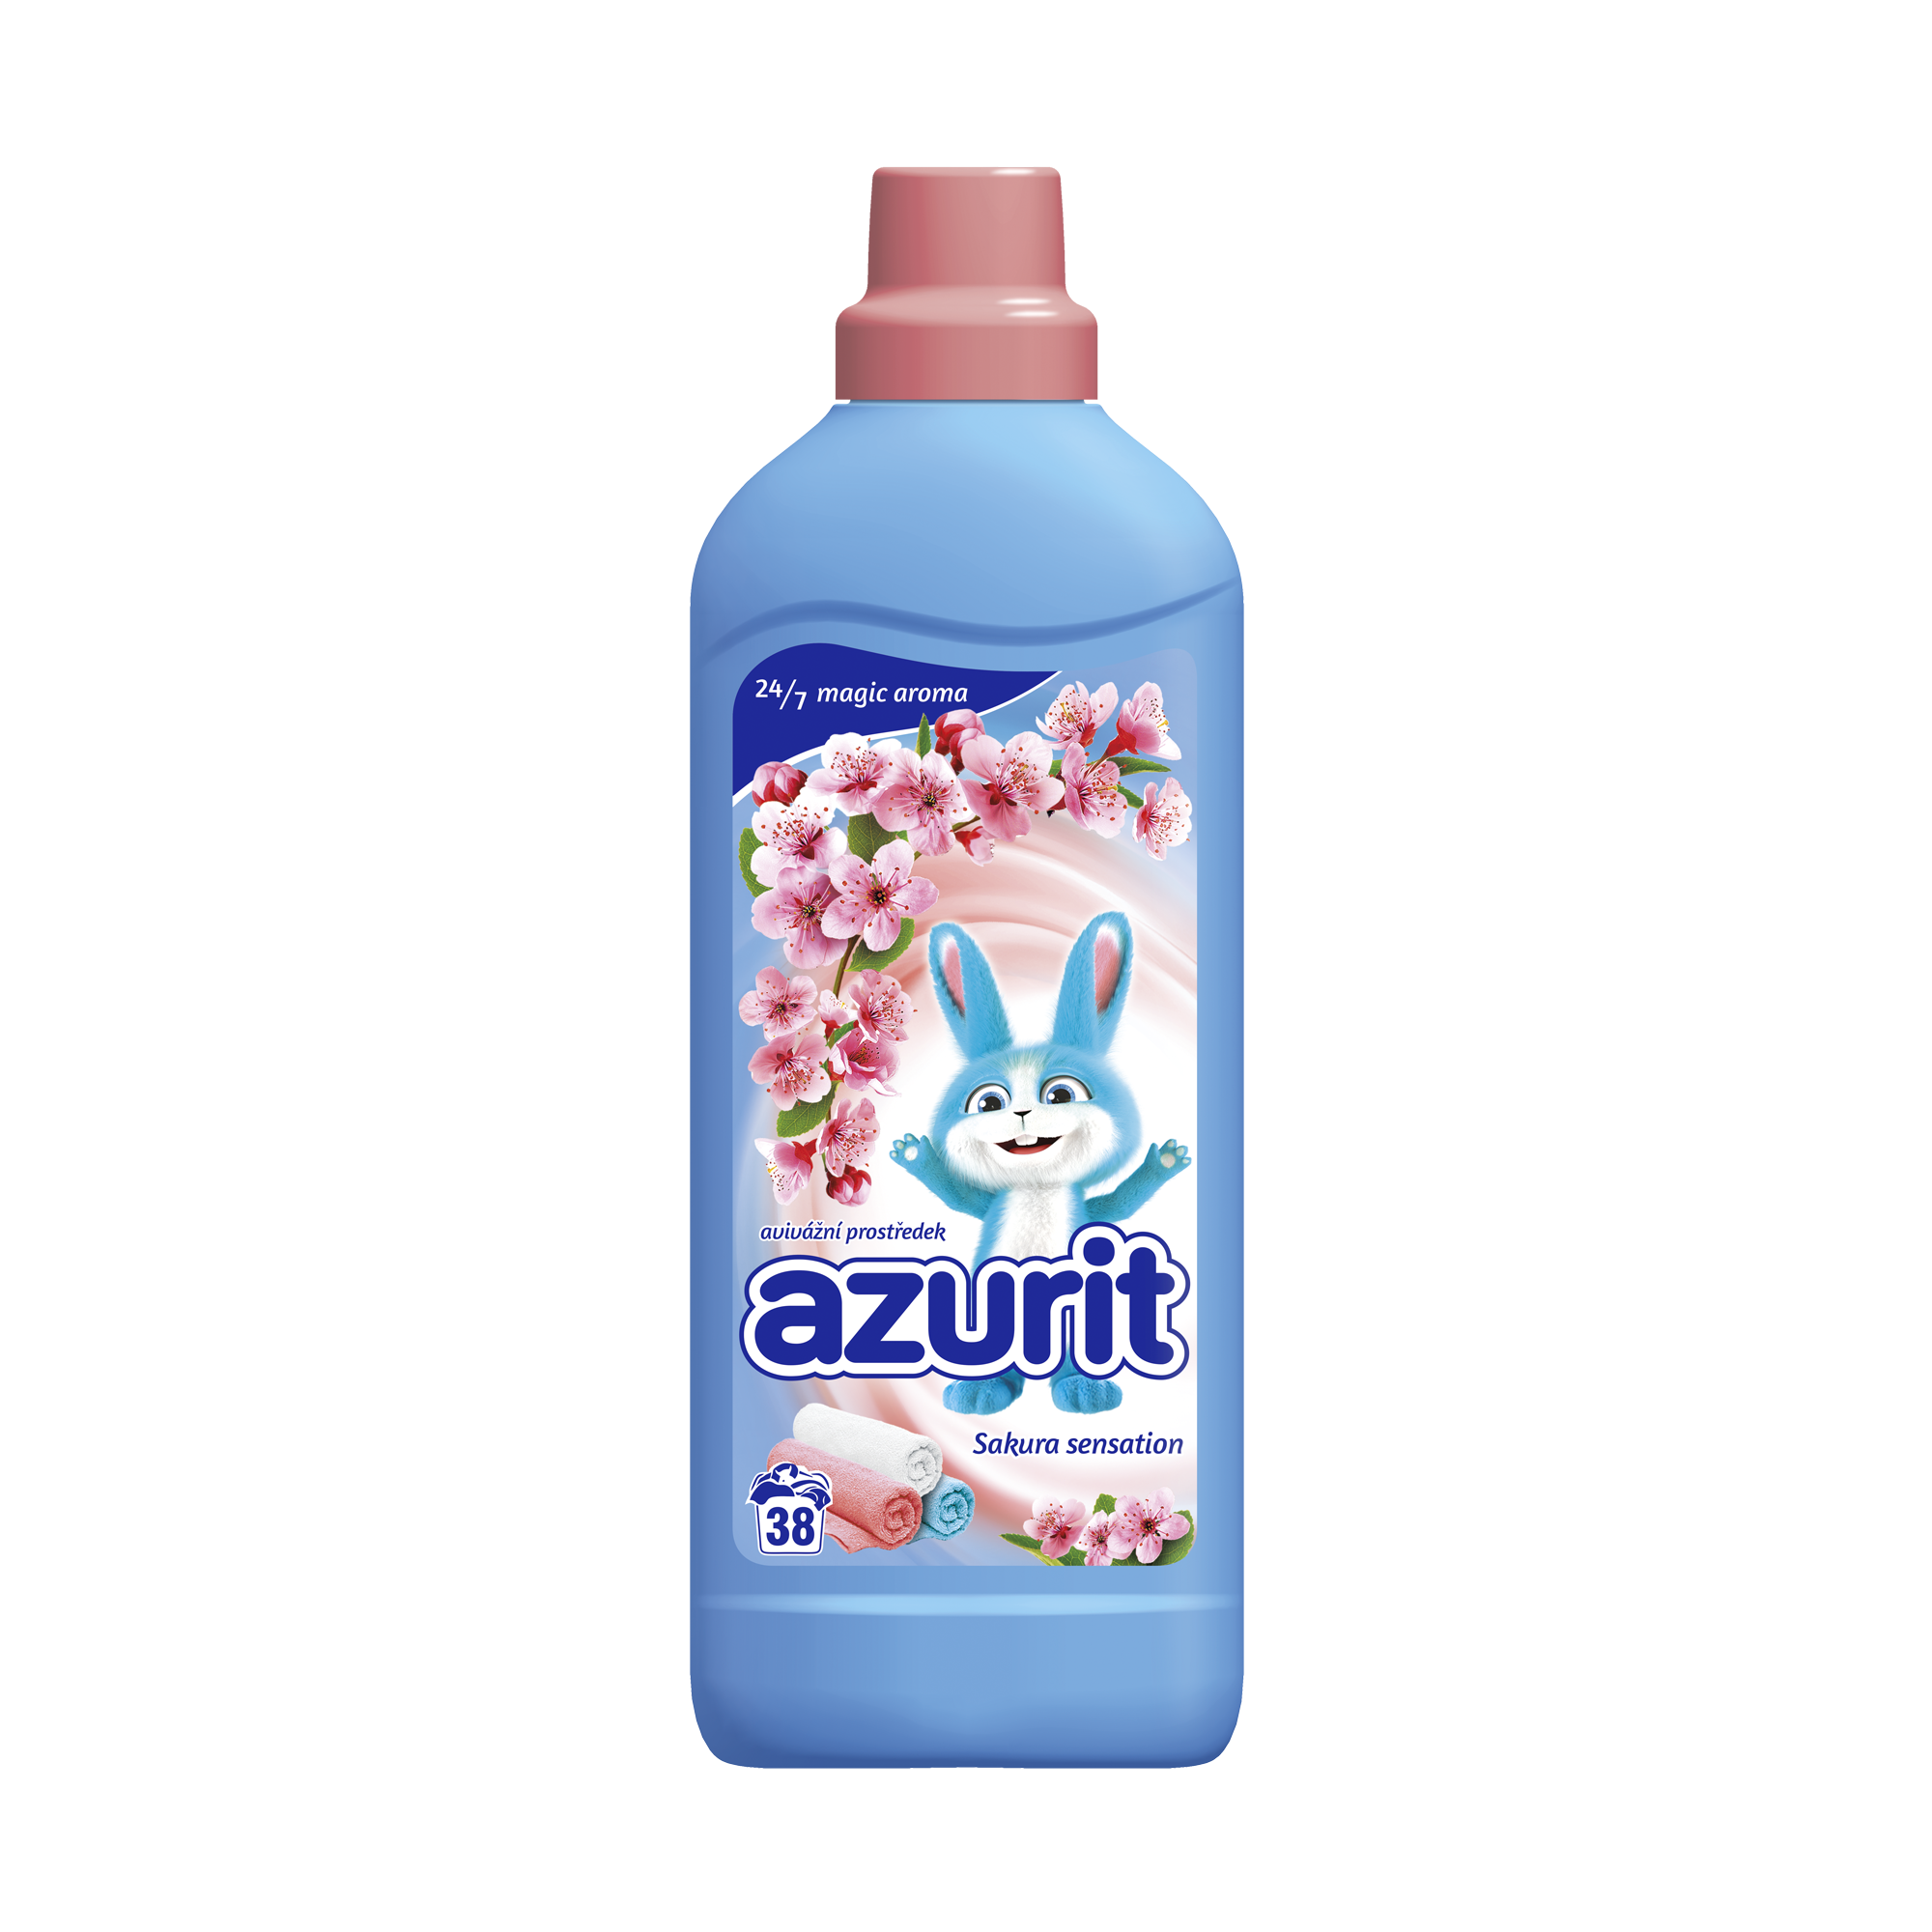 Azurit-sakura-836_1